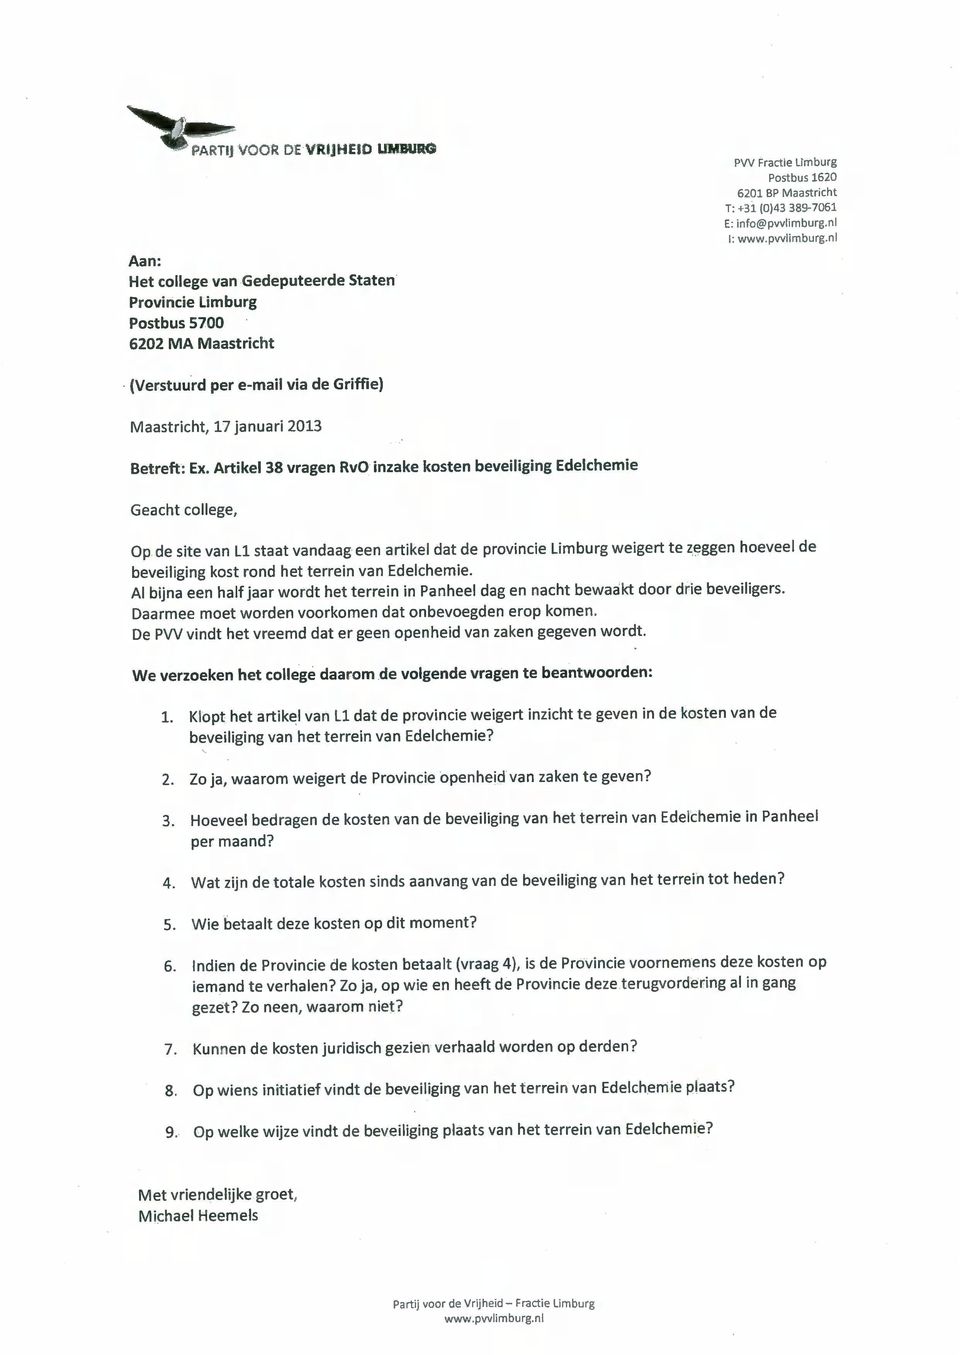 Artikel 38 vragen RvO inzake kosten beveiliging Edelchemie Geacht college, Op de site van LI staat vandaag een artikel dat de provincie Limburg weigert te zeggen hoeveel de beveiliging kost rond het